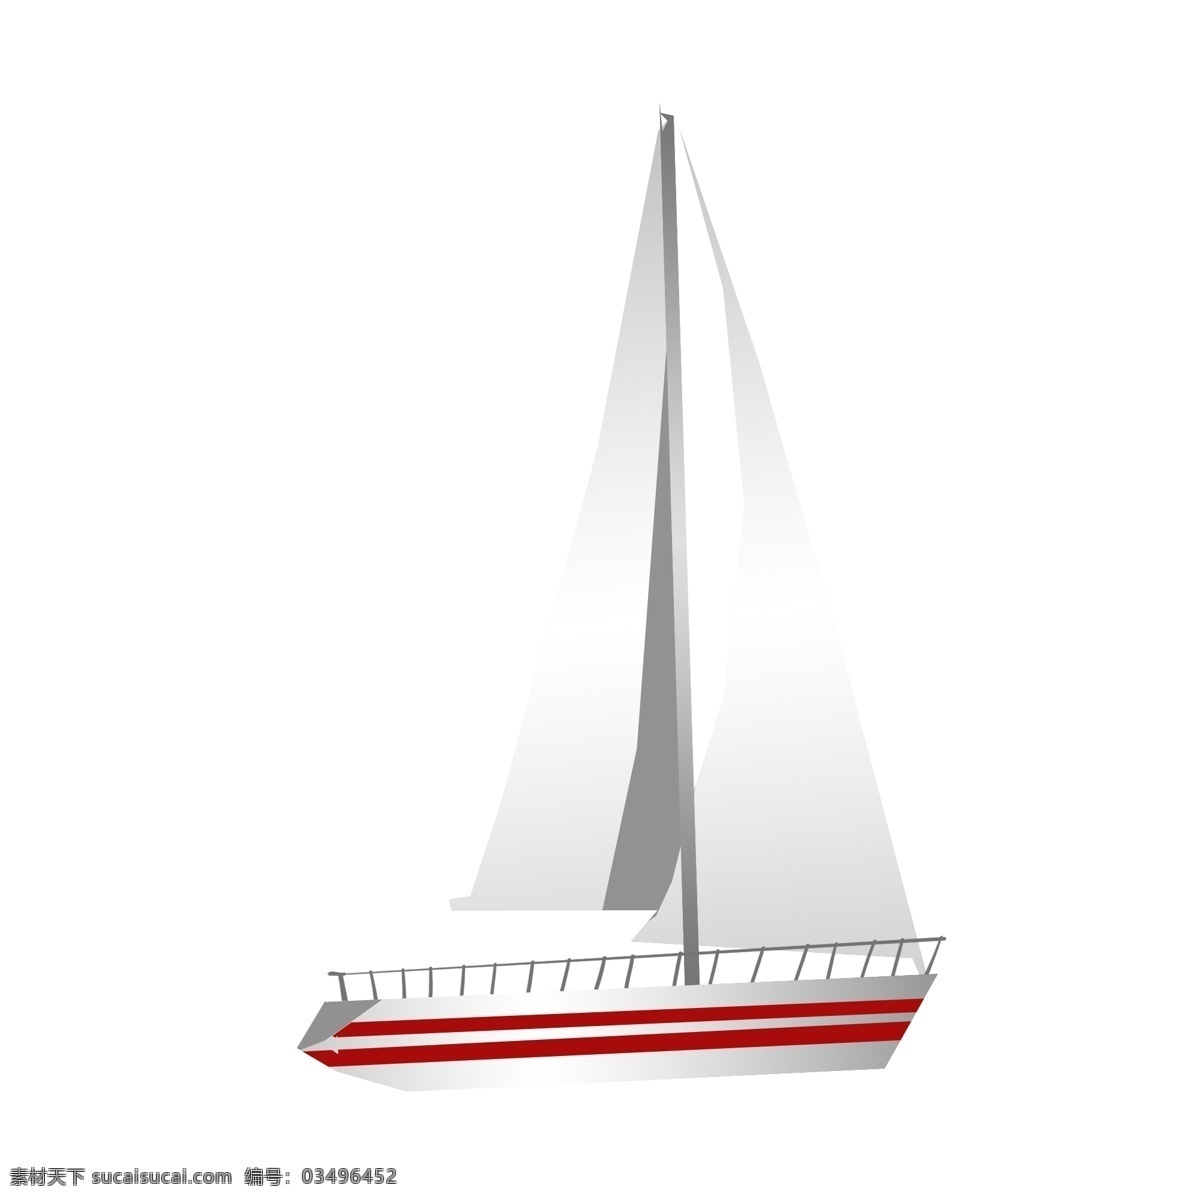 手绘 卡通 帆船 插画 轮船 扬帆起航 一帆风顺 围栏 手绘帆船插画 卡通船 白色帆 红色线条装饰